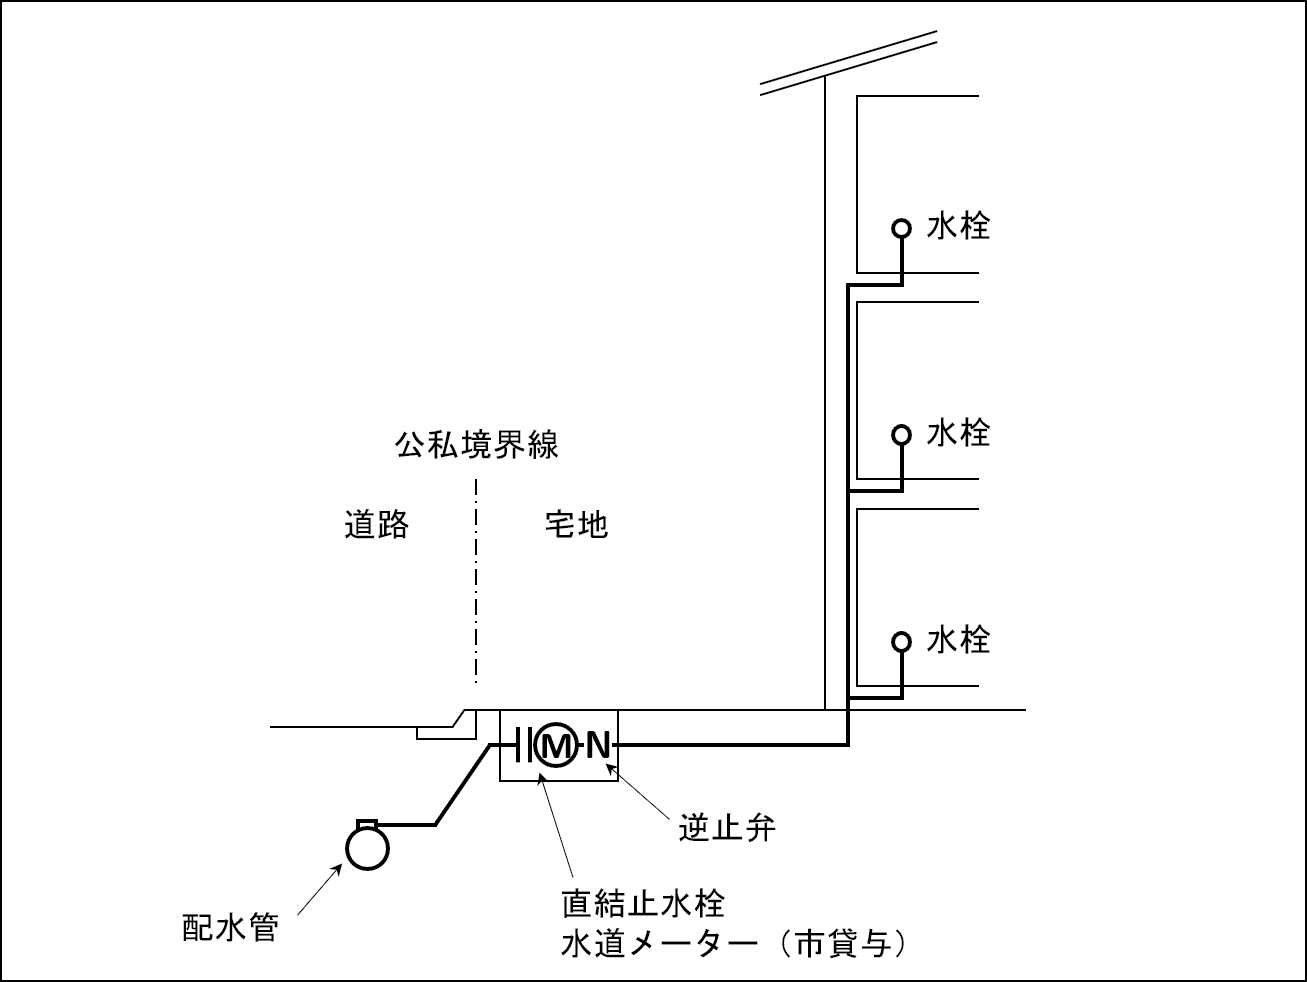 3階直結直圧式のイメージ図